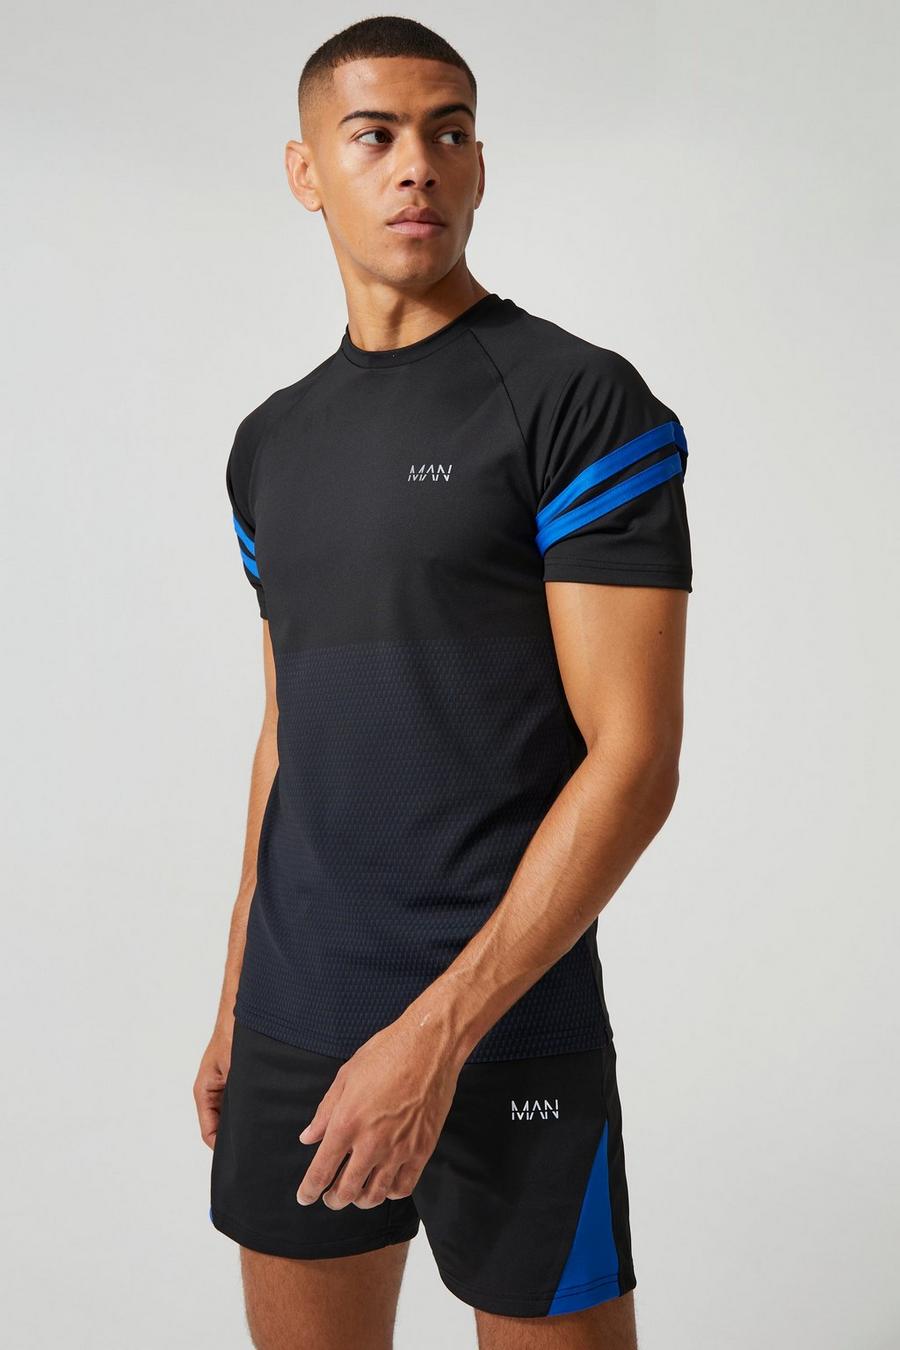 Man Active Trainings T-Shirt mit Farbverlauf, Black schwarz